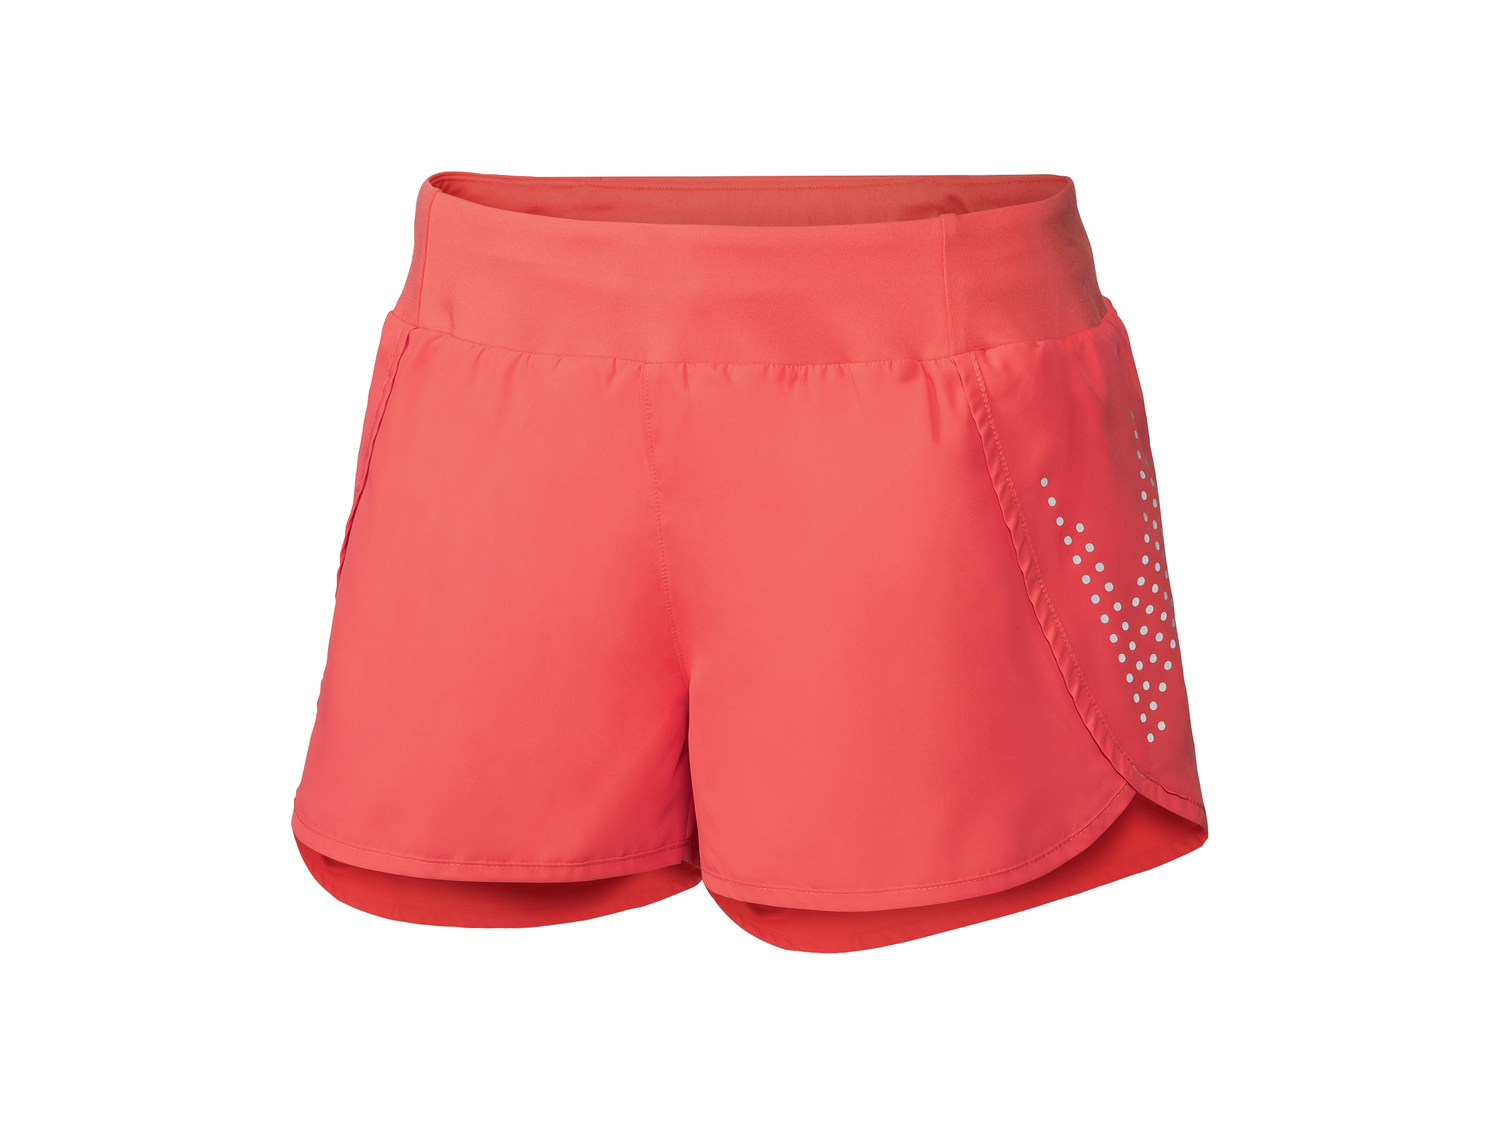 Shorts sportivi da donna Crivit, prezzo 6.99 &#8364; 
Misure: XS-L
Taglie disponibili

Caratteristiche

- ...